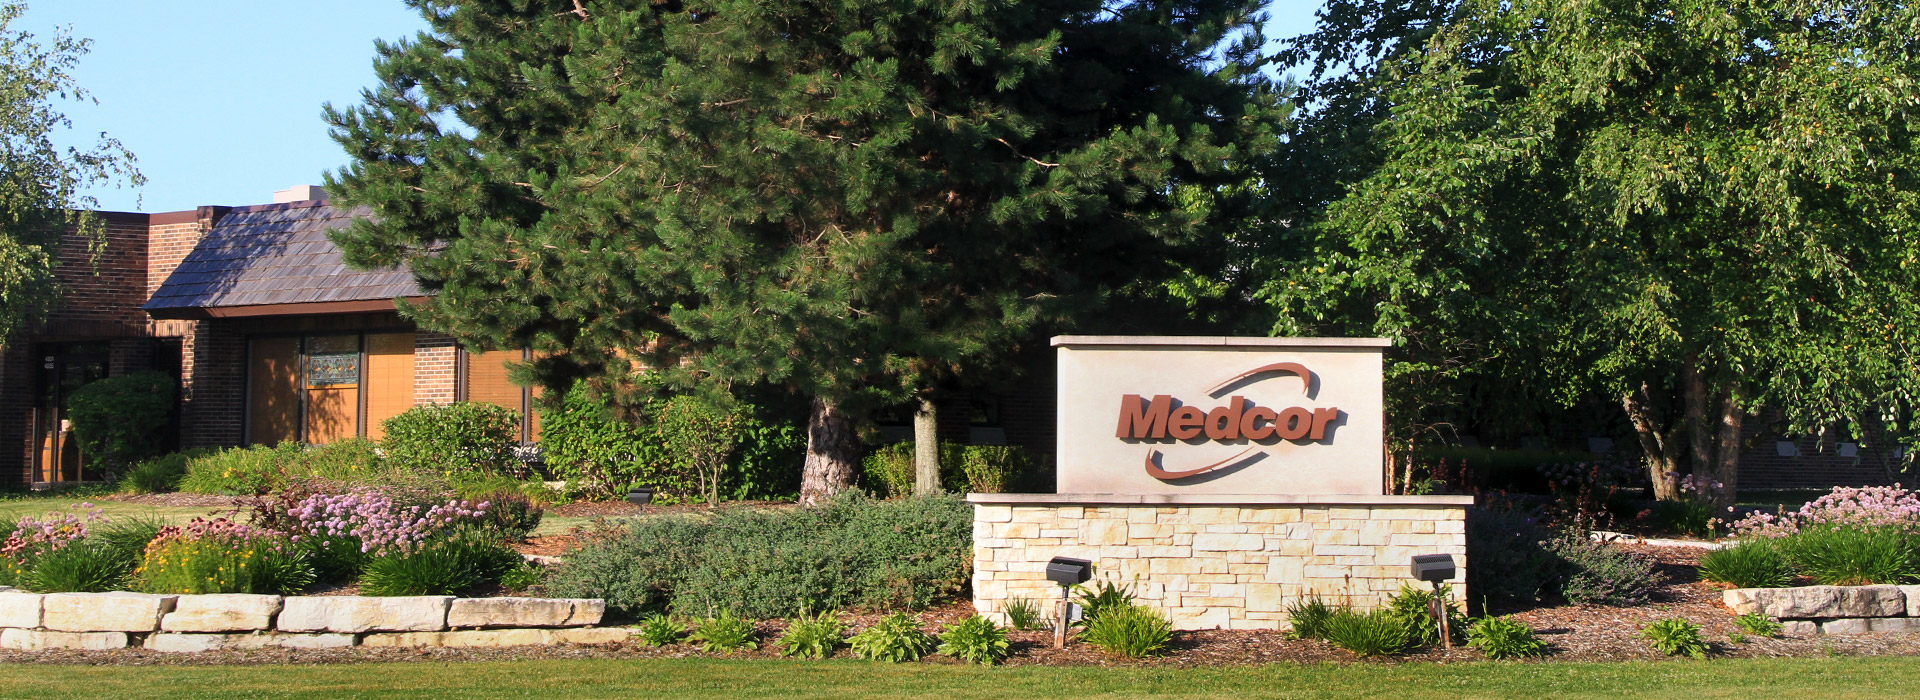 Medcor Headquarters